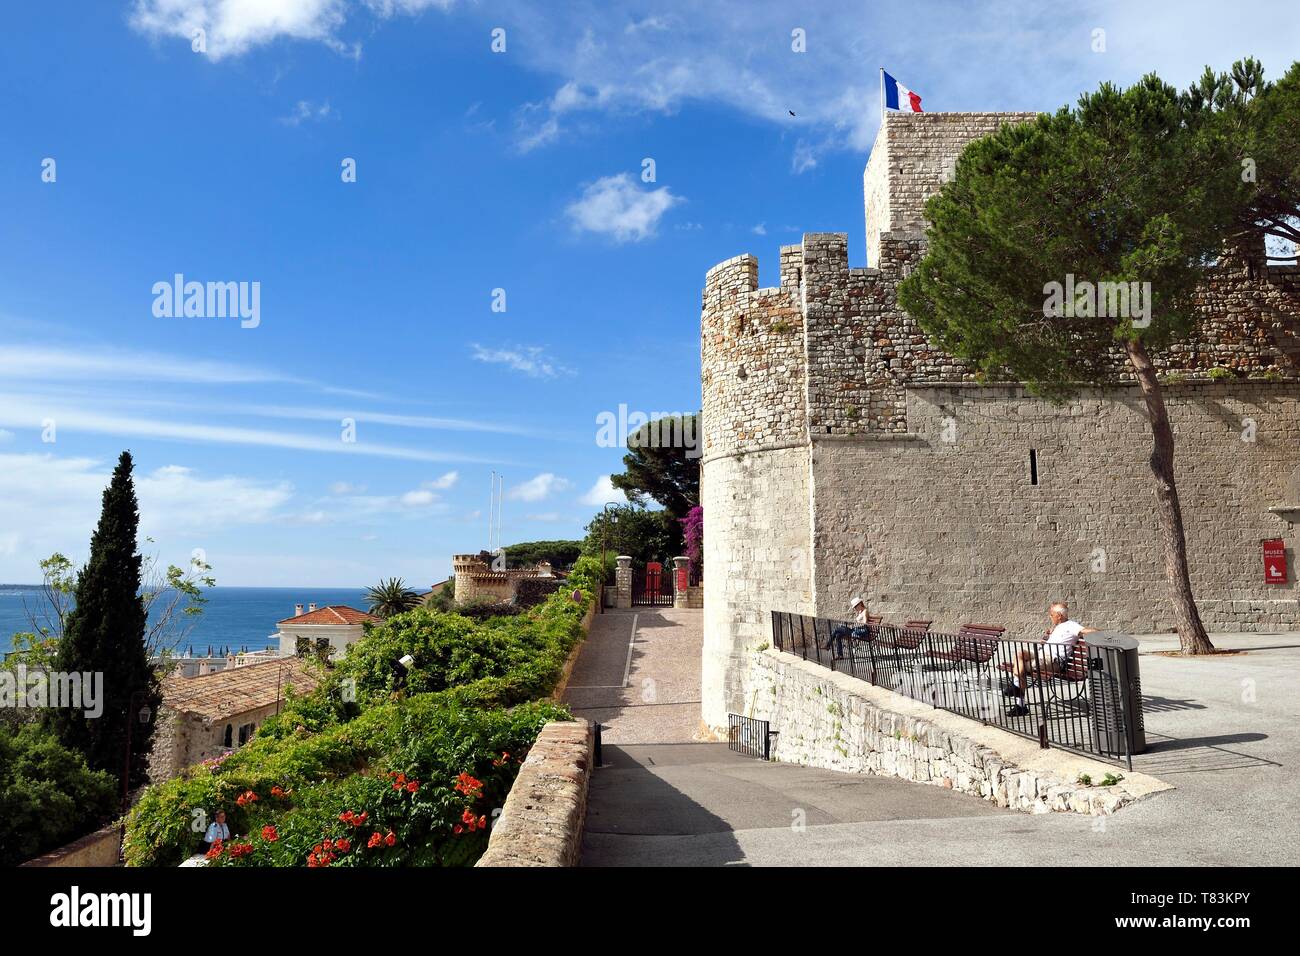 Frankreich, Alpes Maritimes, Cannes, der Altstadt von Le Suquet Stadtteil Suquet Turm in das Museum von Castre in die Reste der mittelalterlichen Burg der Mönche von Lerins installiert Stockfoto